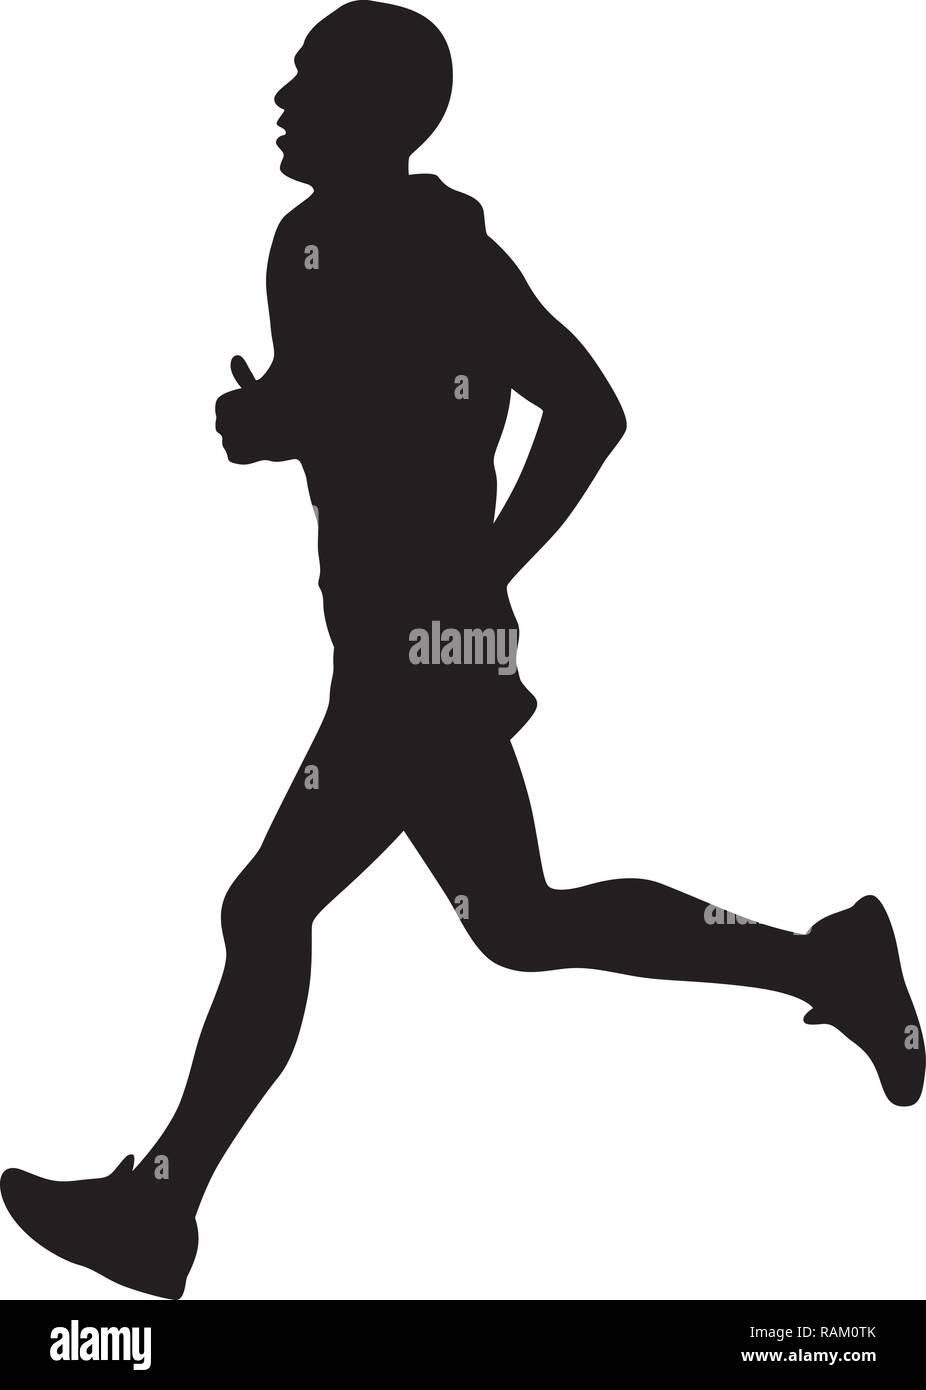 man running silhouette clip art